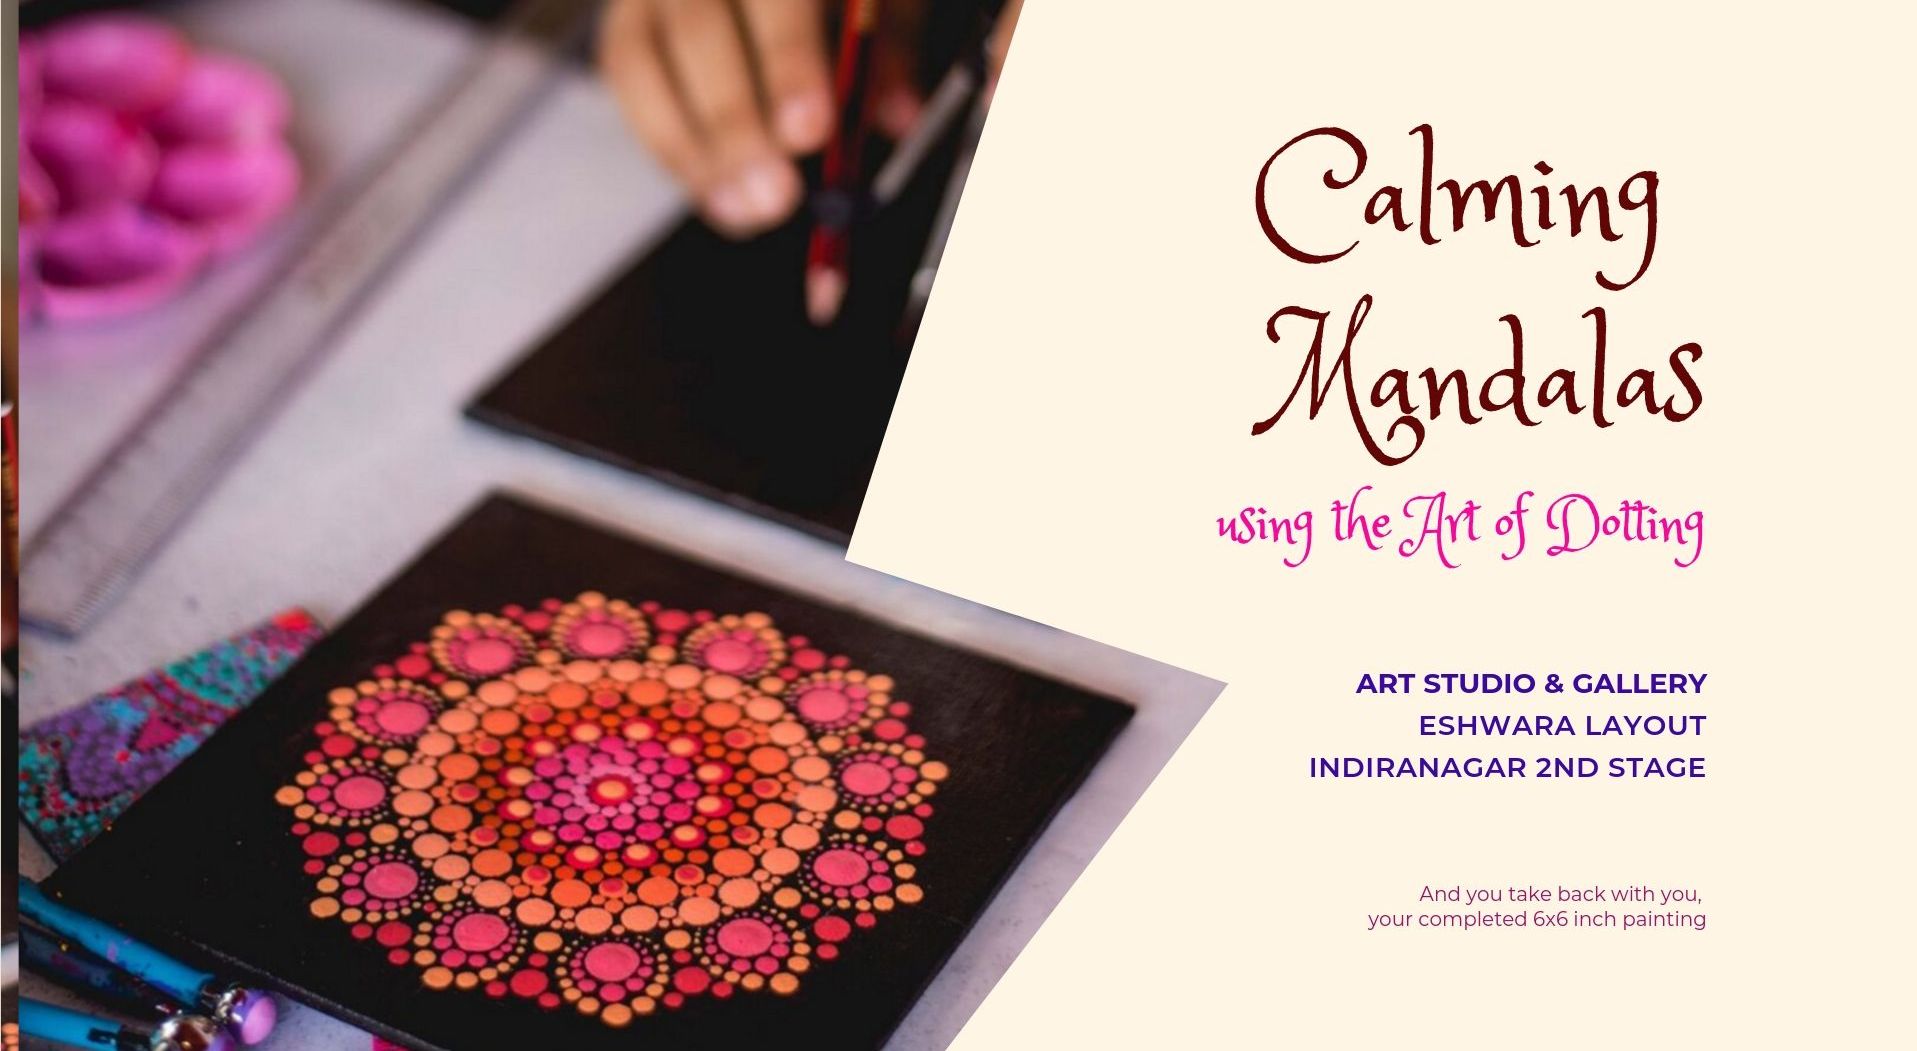 Calming Mandalas using the Art of Dotting with Sai Priya Mahajan